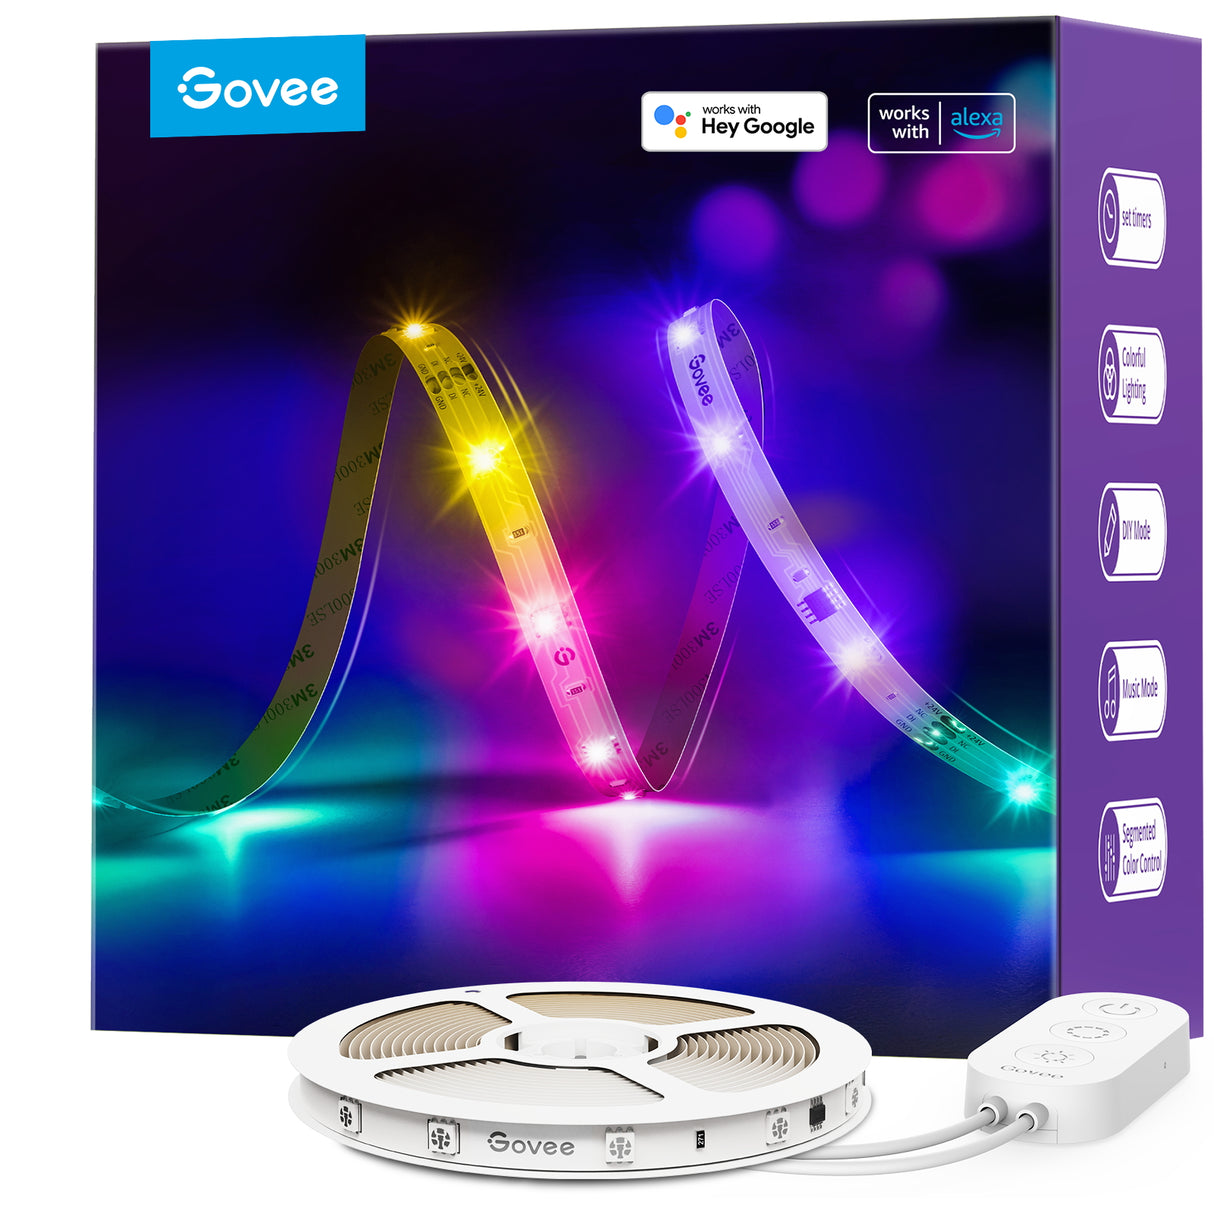 Govee RGBIC Basic Wi-Fi + Bluetooth LED Strip Lights - Govee